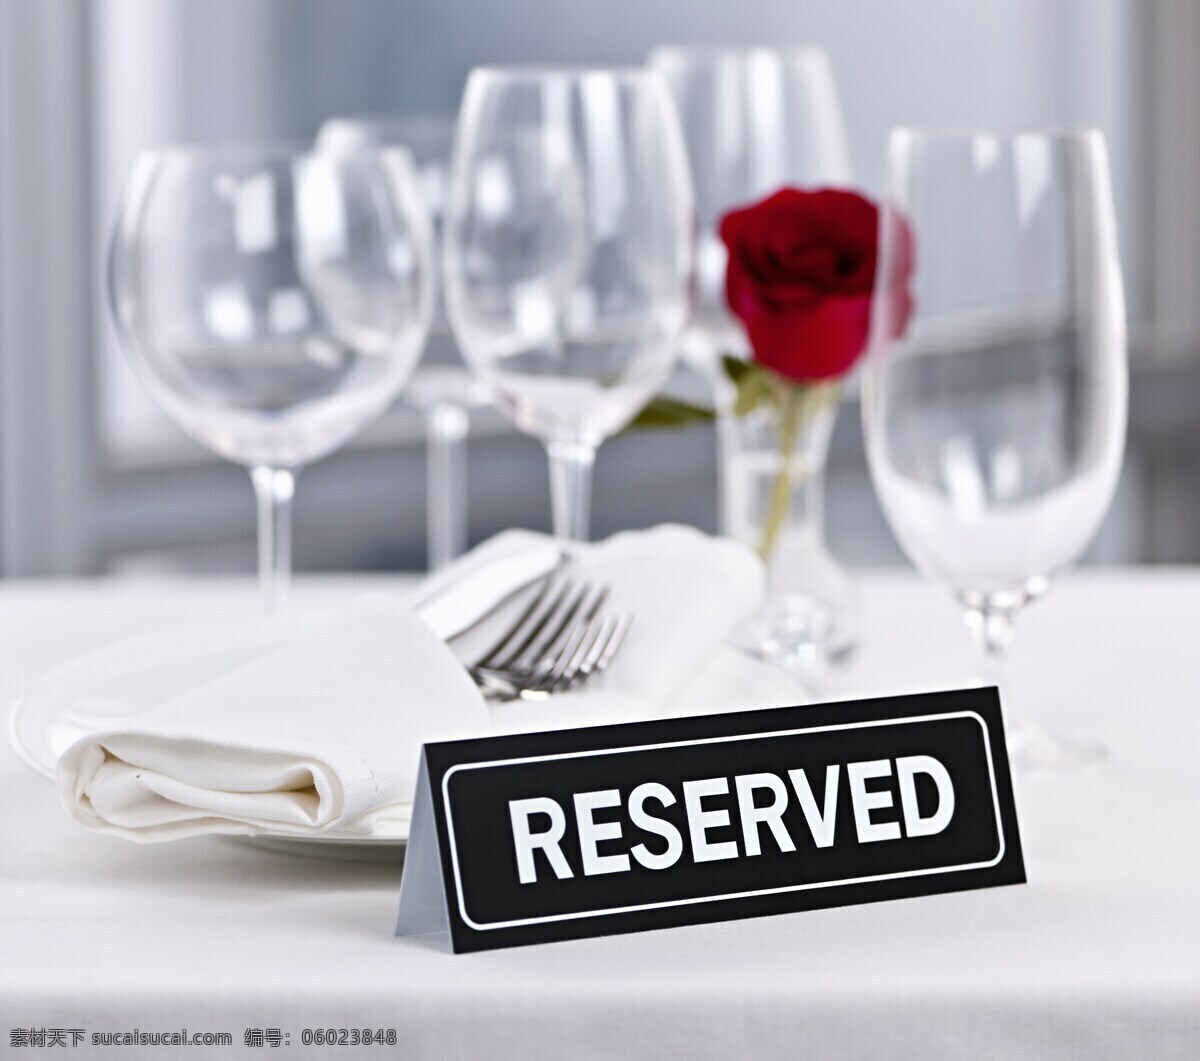 玻璃杯 玫瑰花 桌子 餐巾 高角杯 红玫瑰 生活用品 生活百科